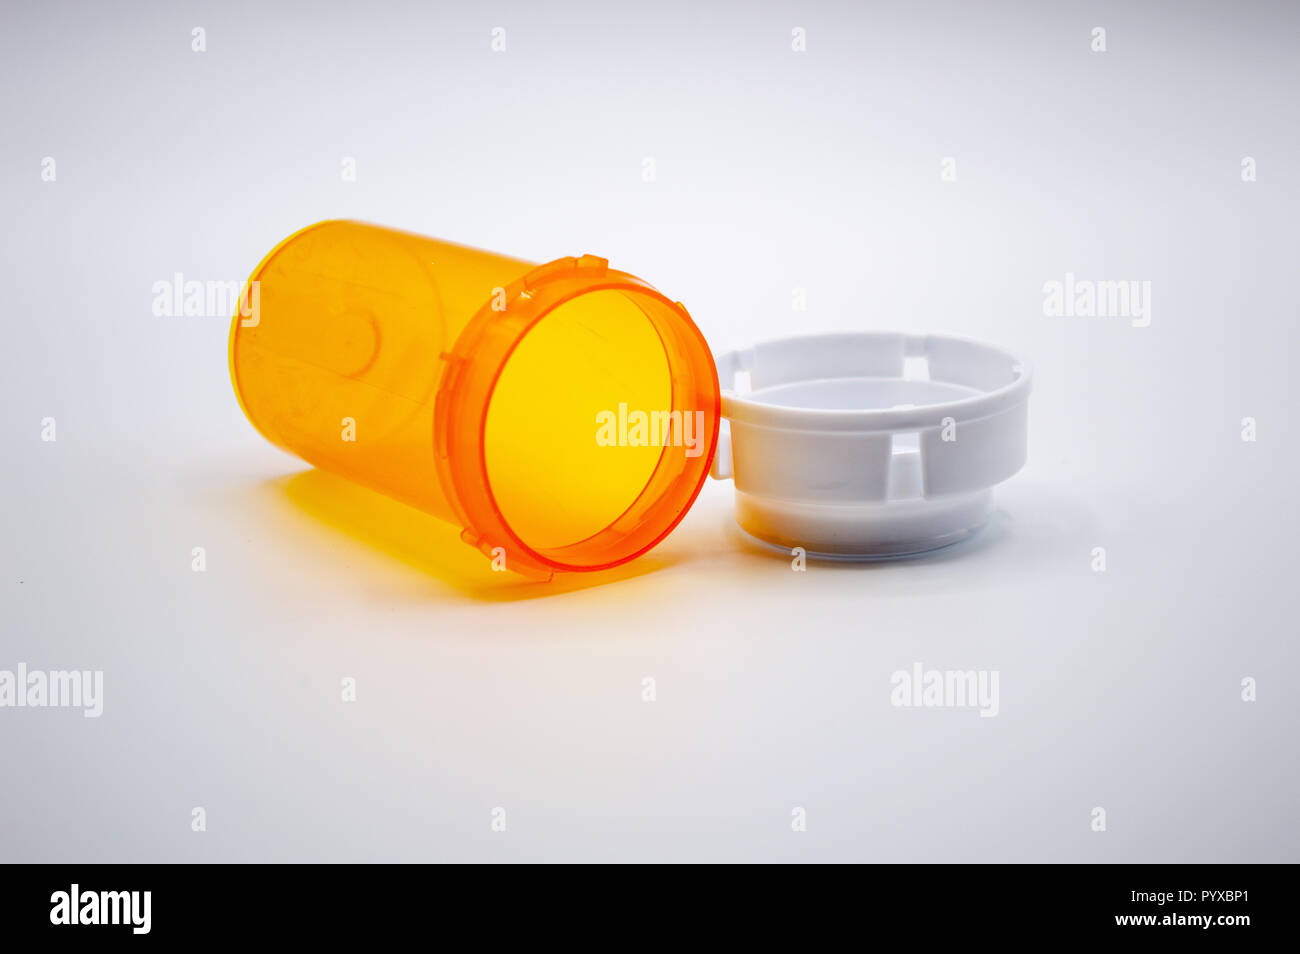 Empty orange medicine bottle with white cap isolated on white background. Stock Photo